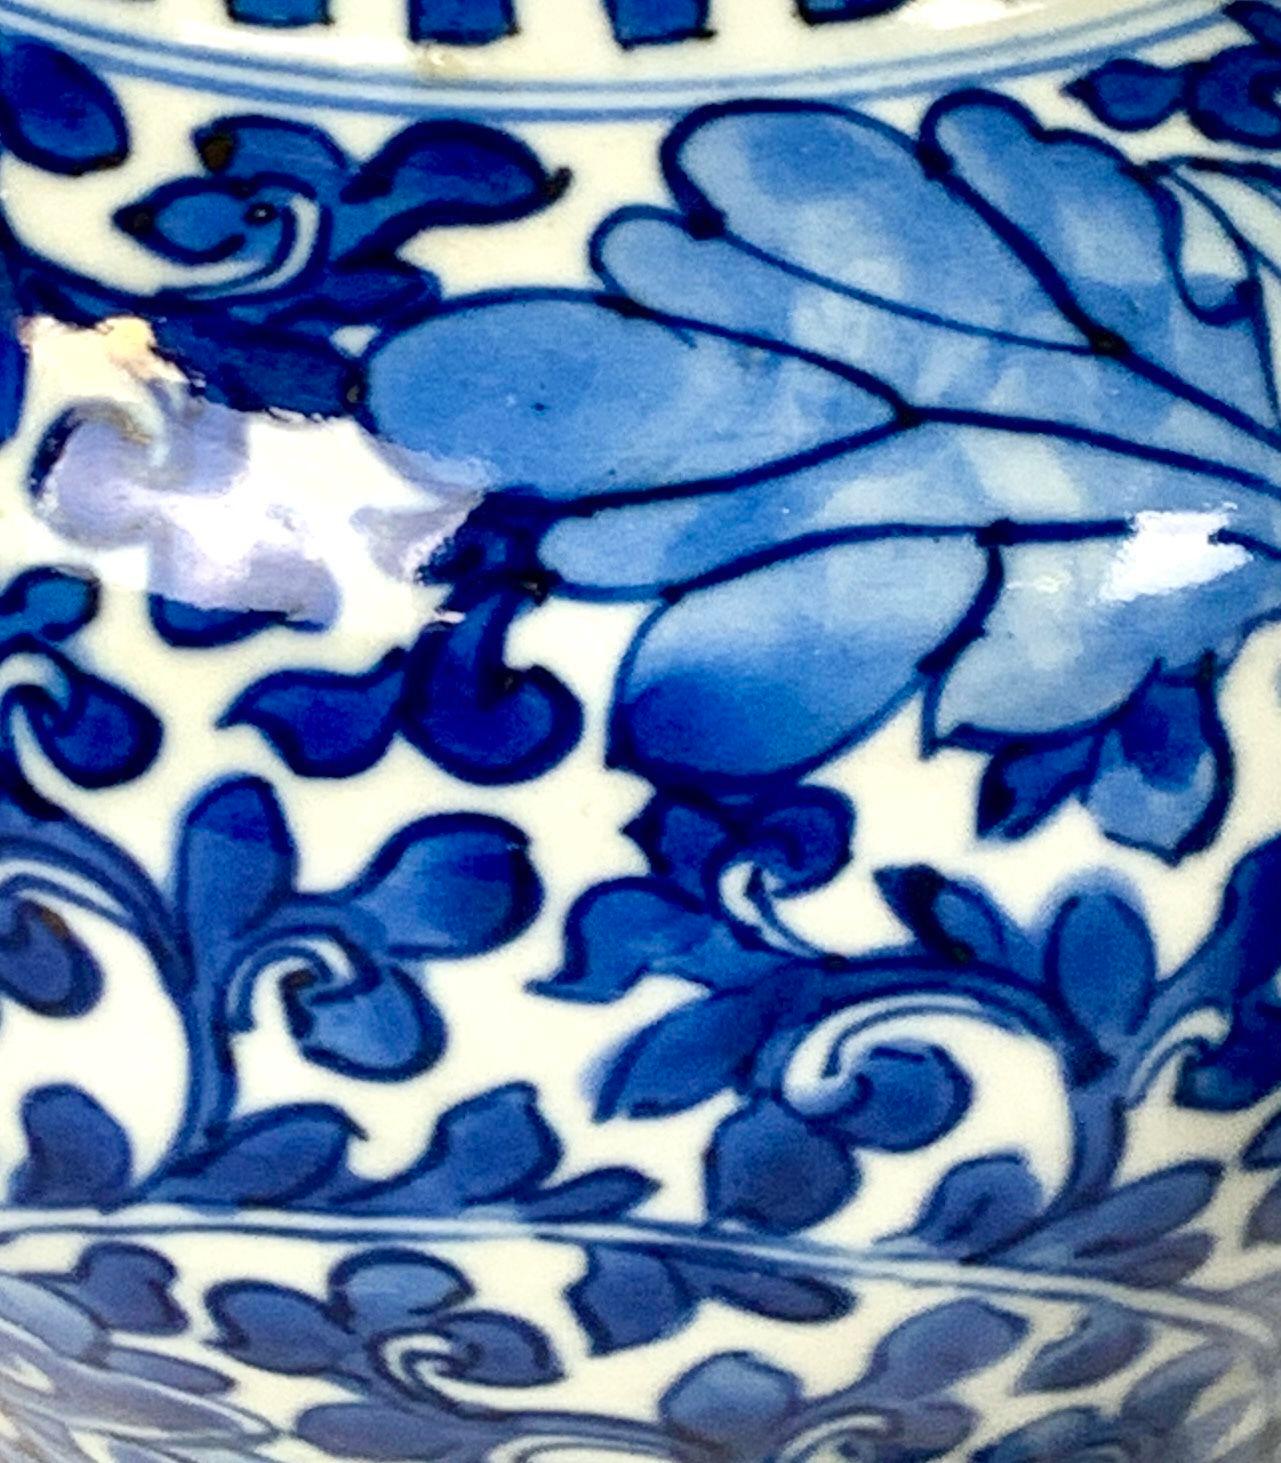 Cette magnifique paire de jarres en porcelaine chinoise bleue et blanche a été fabriquée vers 1875 sous le règne de l'empereur Guangxu.
Elles sont peintes à la main dans un bleu cobalt exquis et sont magnifiques lorsqu'elles sont exposées. 
Des